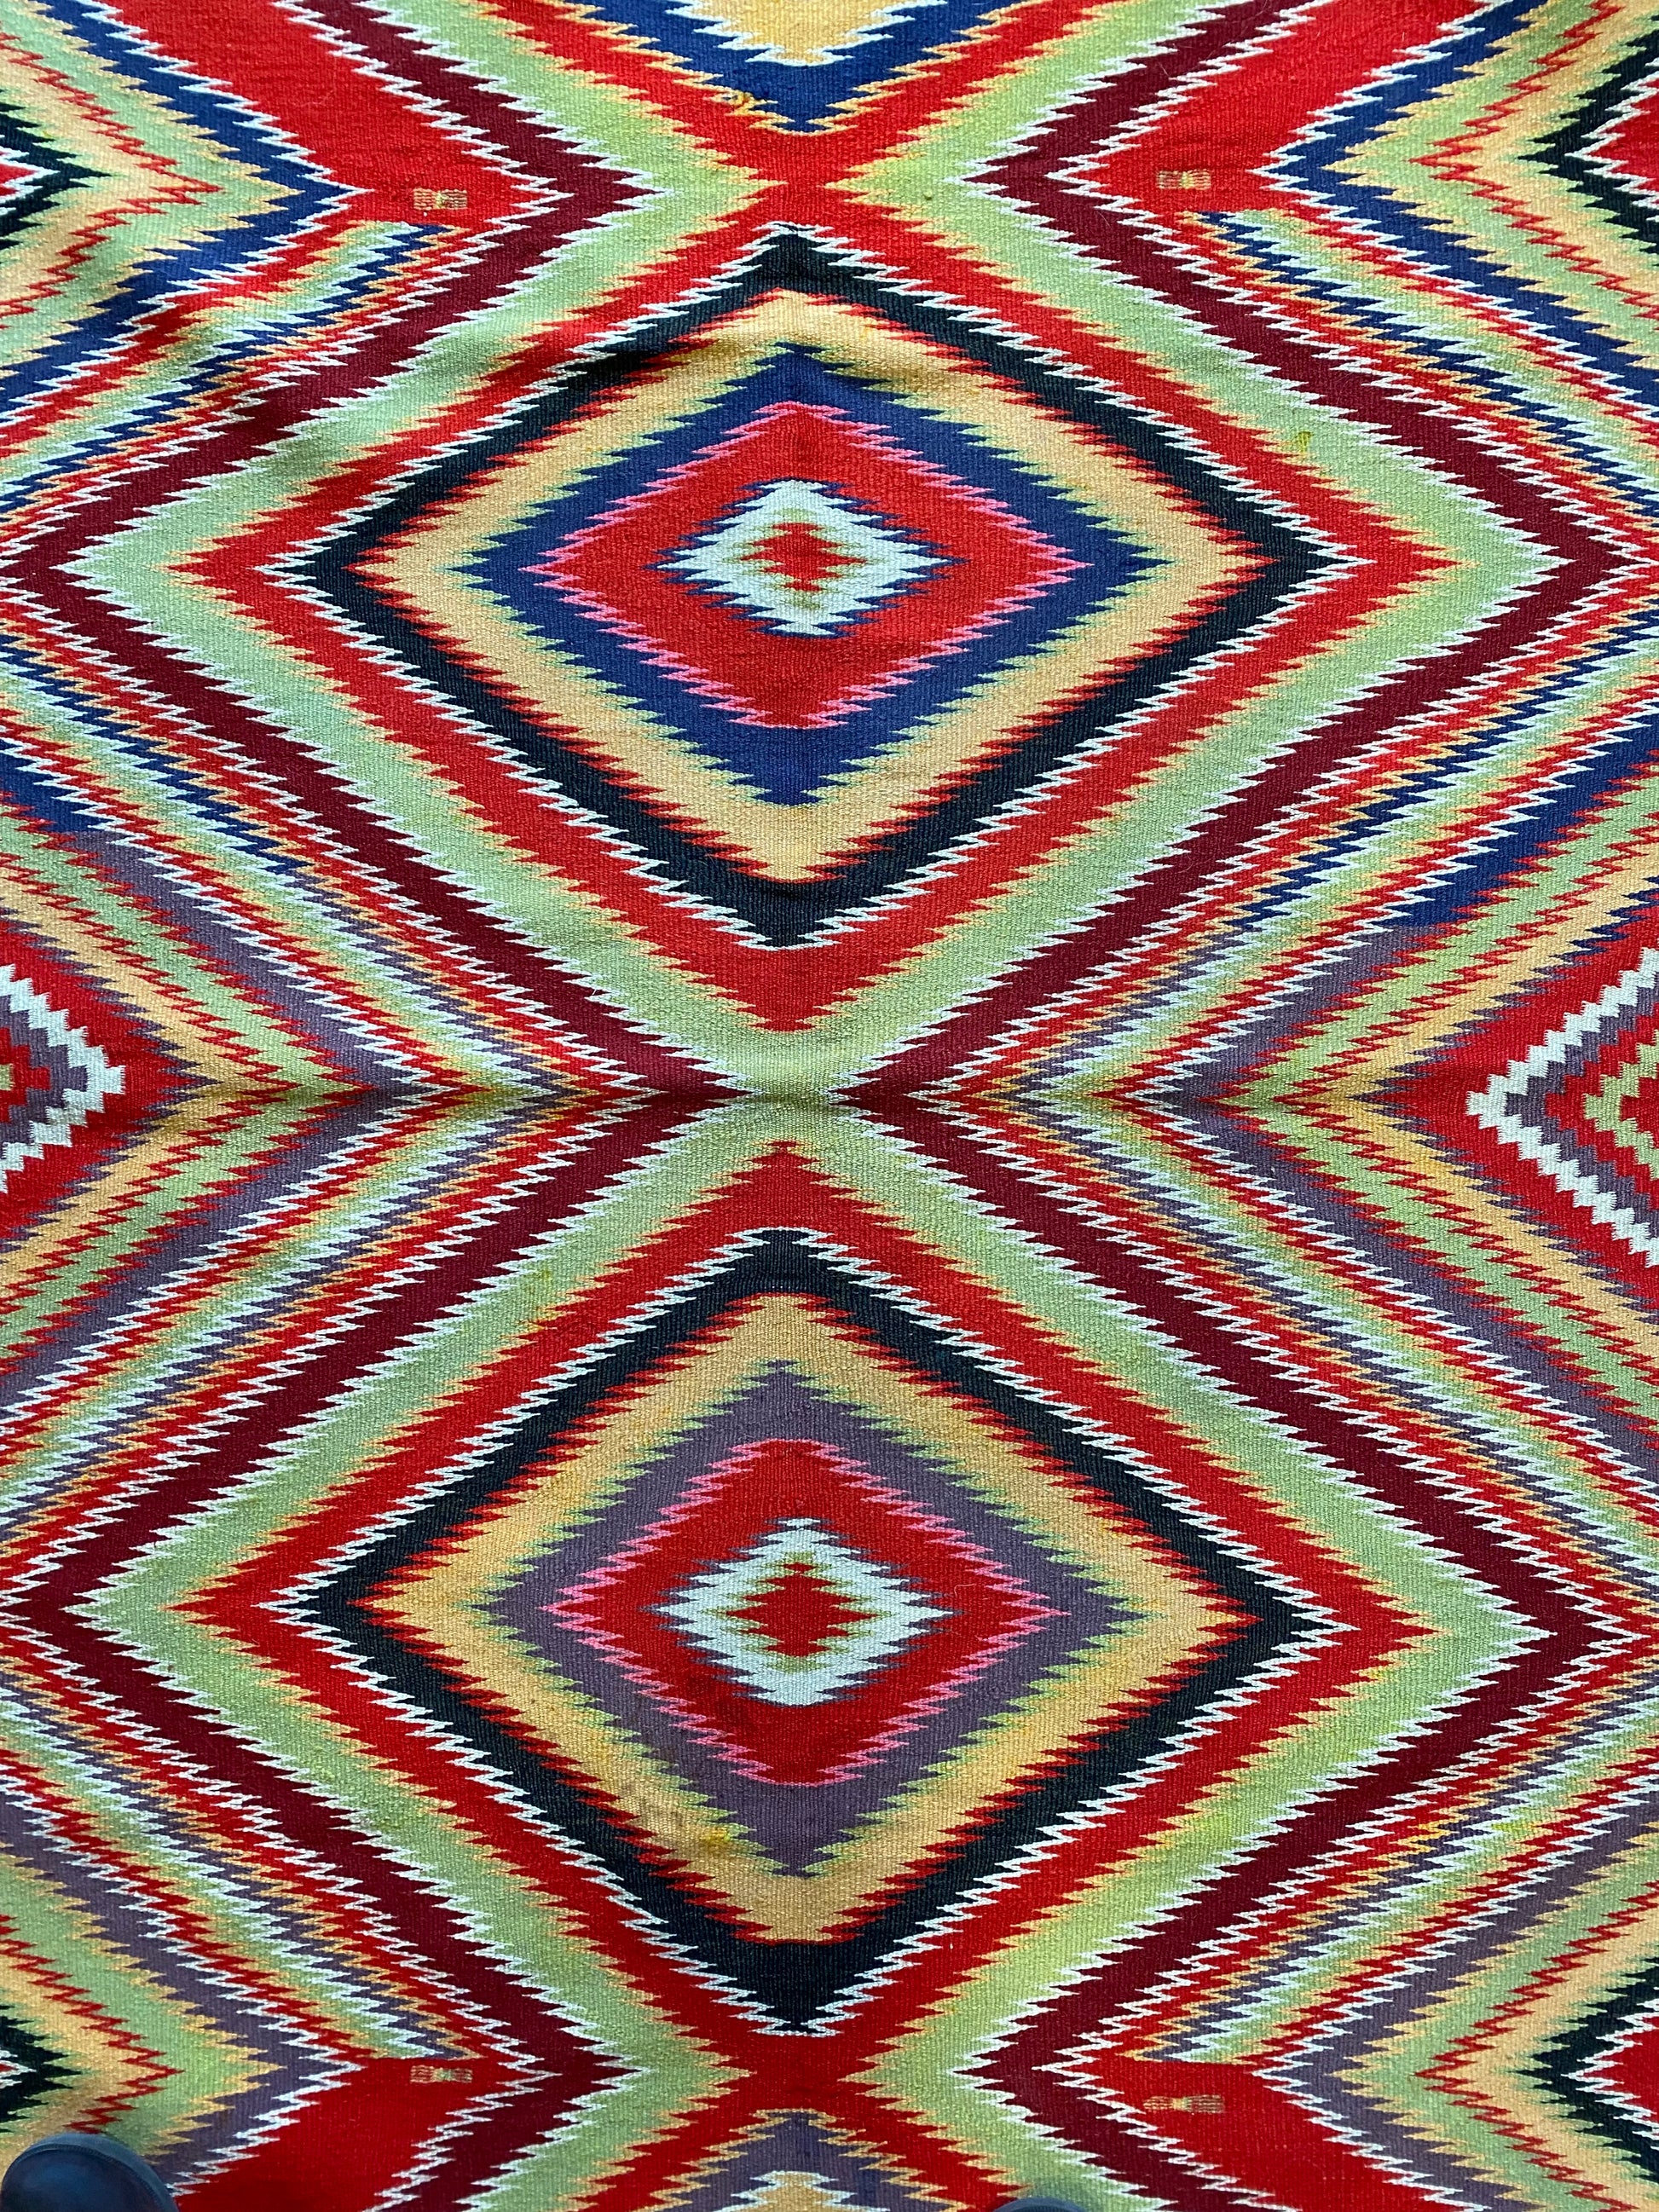 Navajo Germantown weaving, navajo rug for sale, antique navajo weaving, telluride furnishings, telluride art gallery